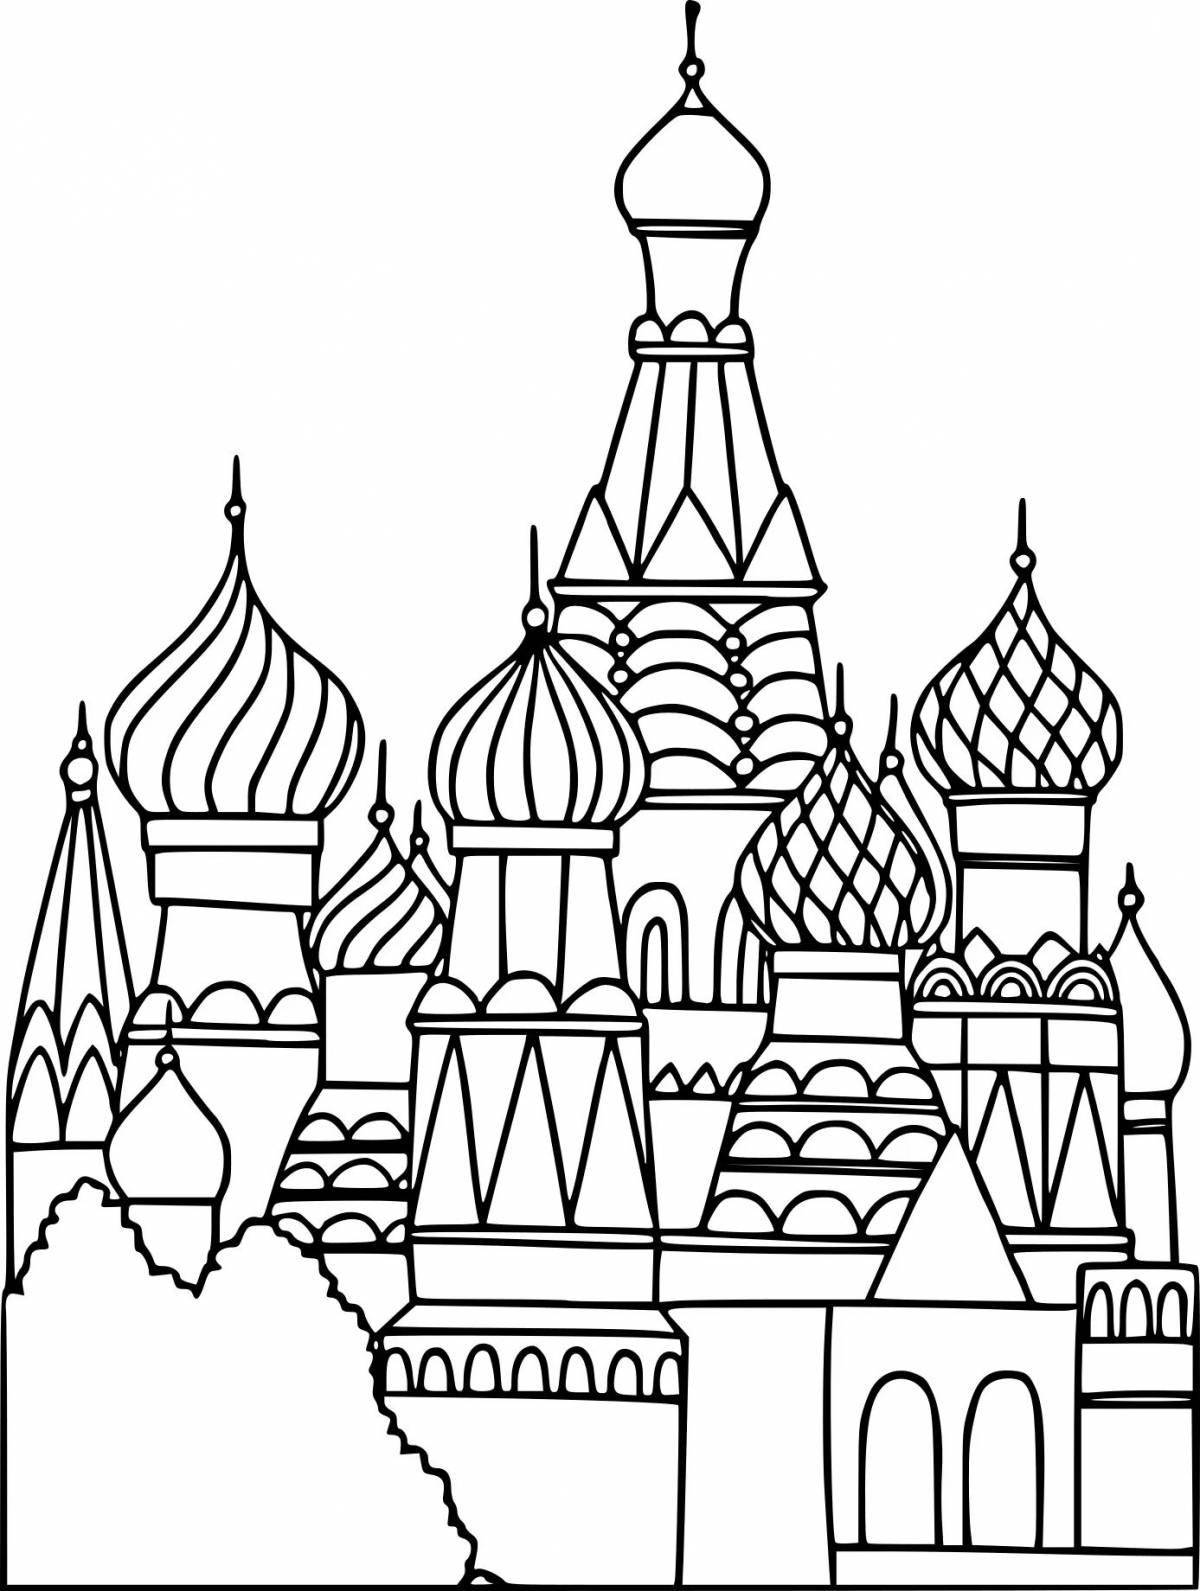 Игривая раскраска московский кремль для детей